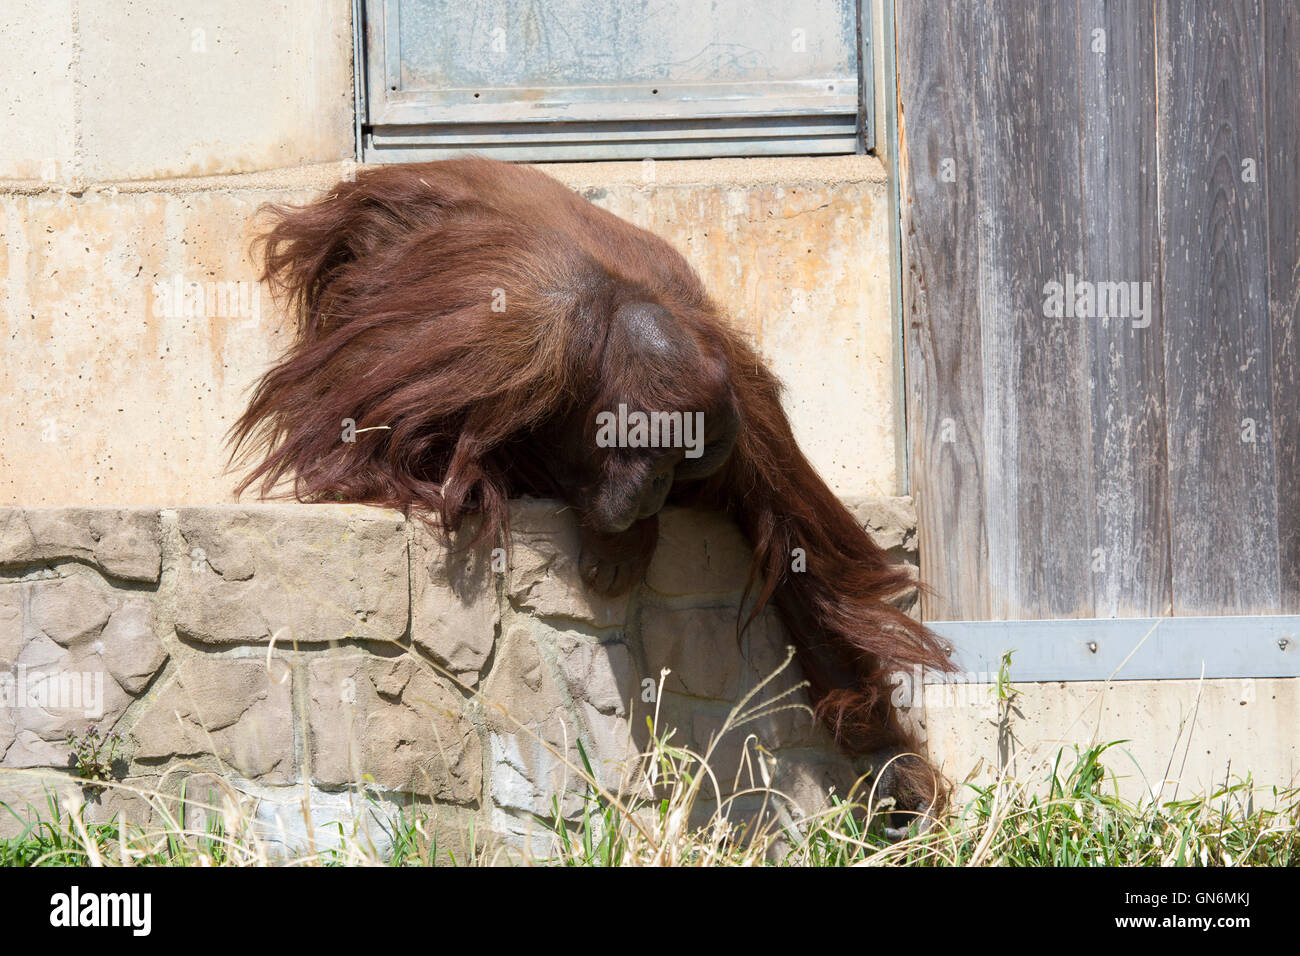 Un orang-outan mâle atteint pour un peu d'herbe au National Zoo de Washington, DC. Banque D'Images